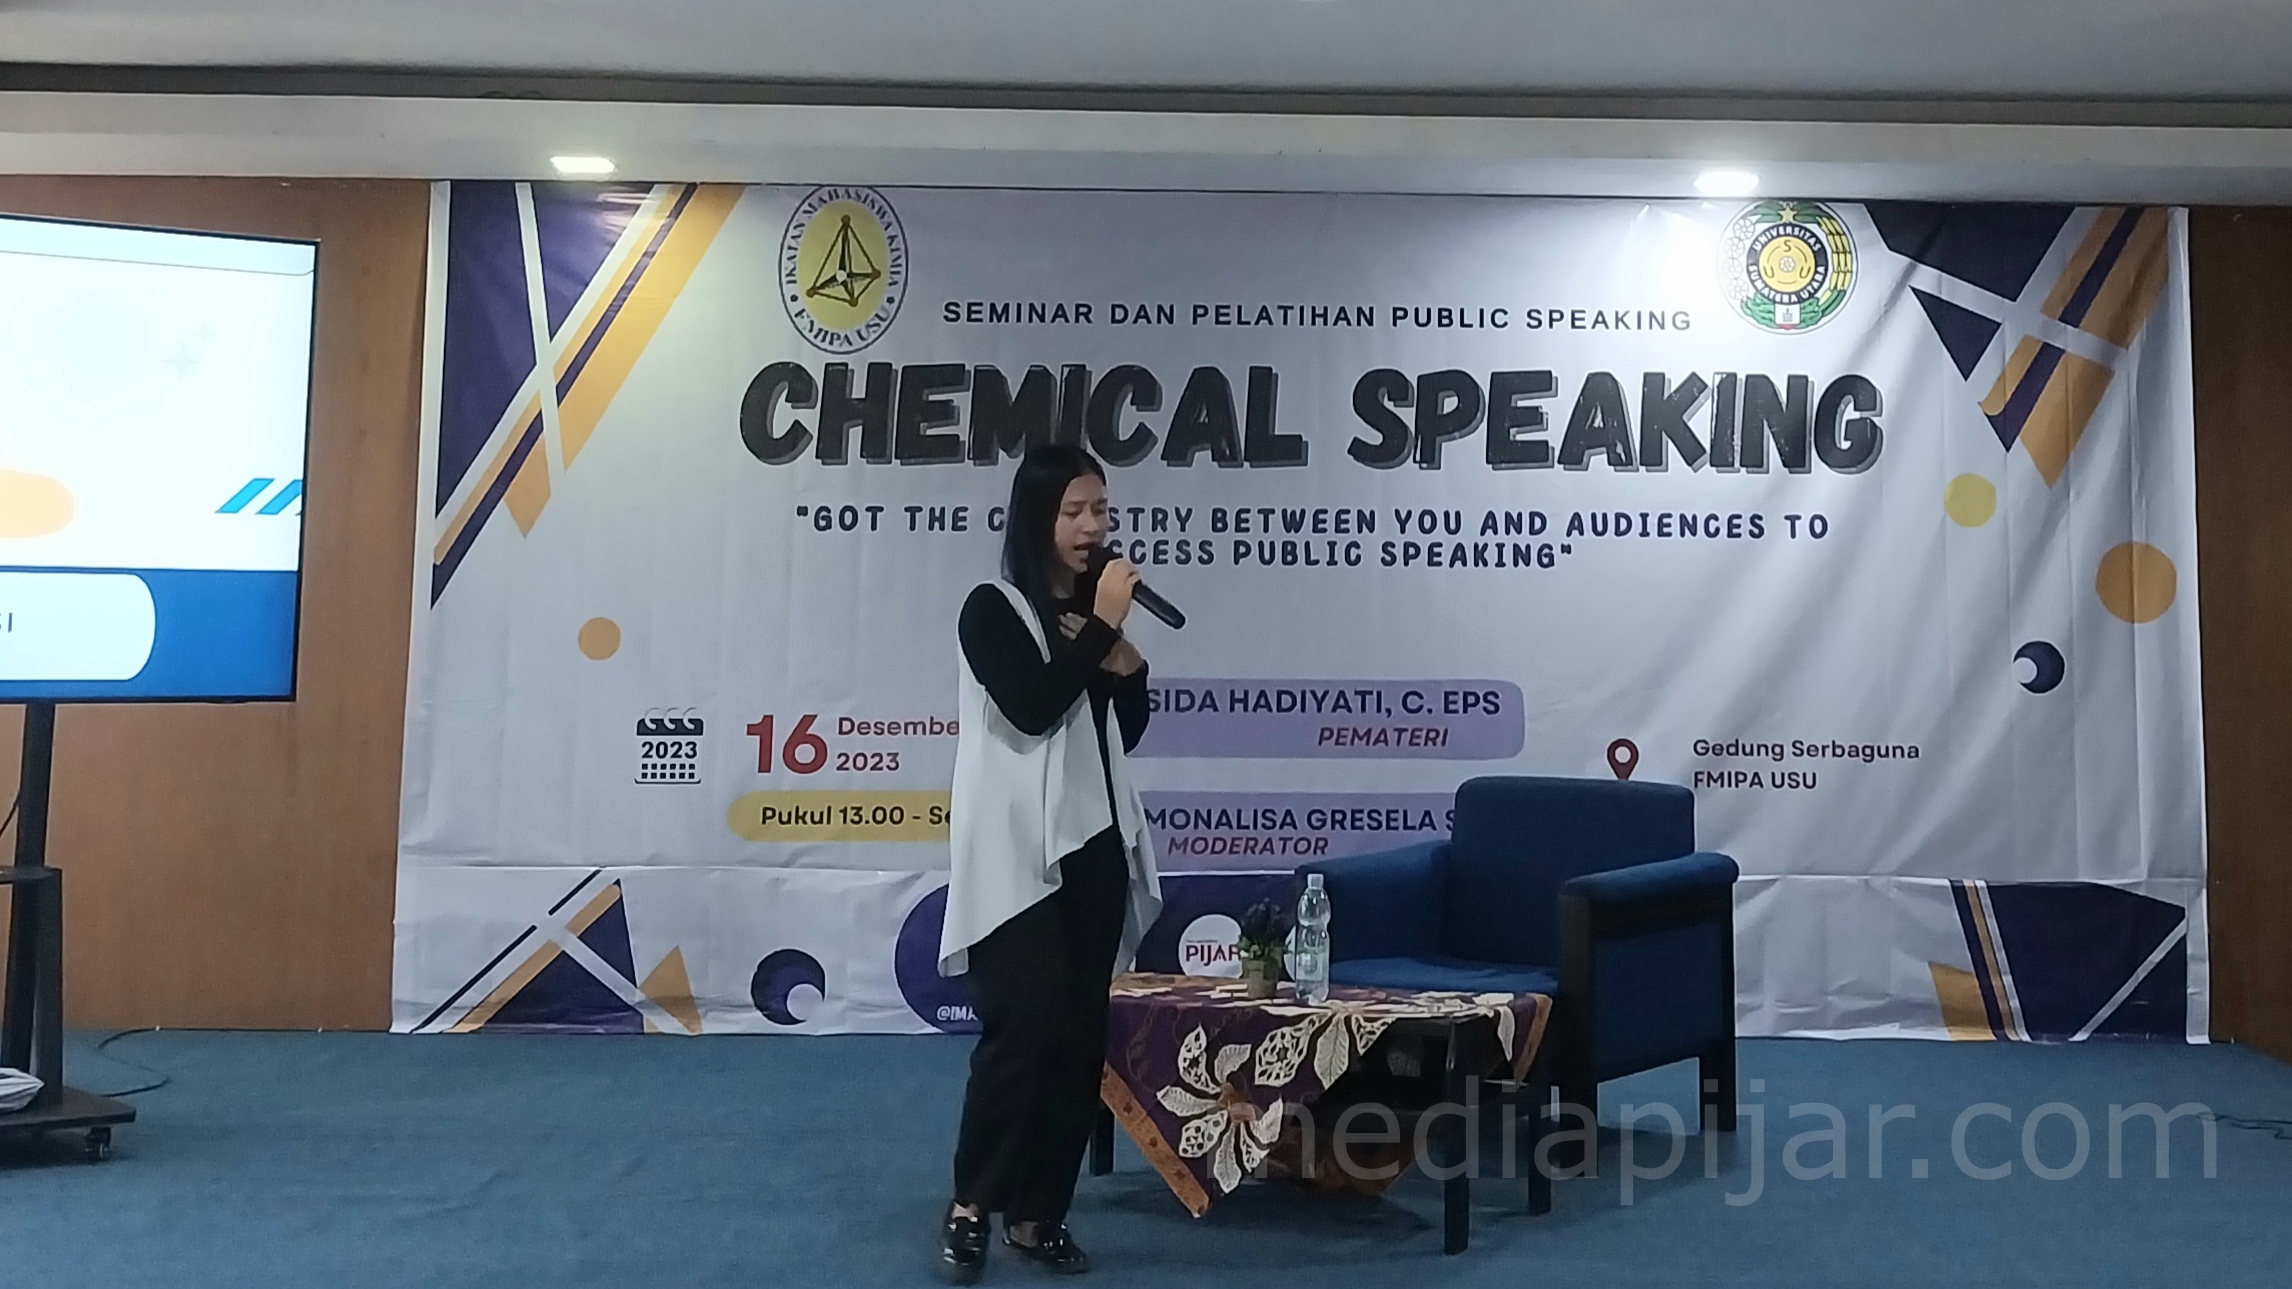 Seminar dan Pelatihan Chemical Public Speaking - www.mediapijar.com